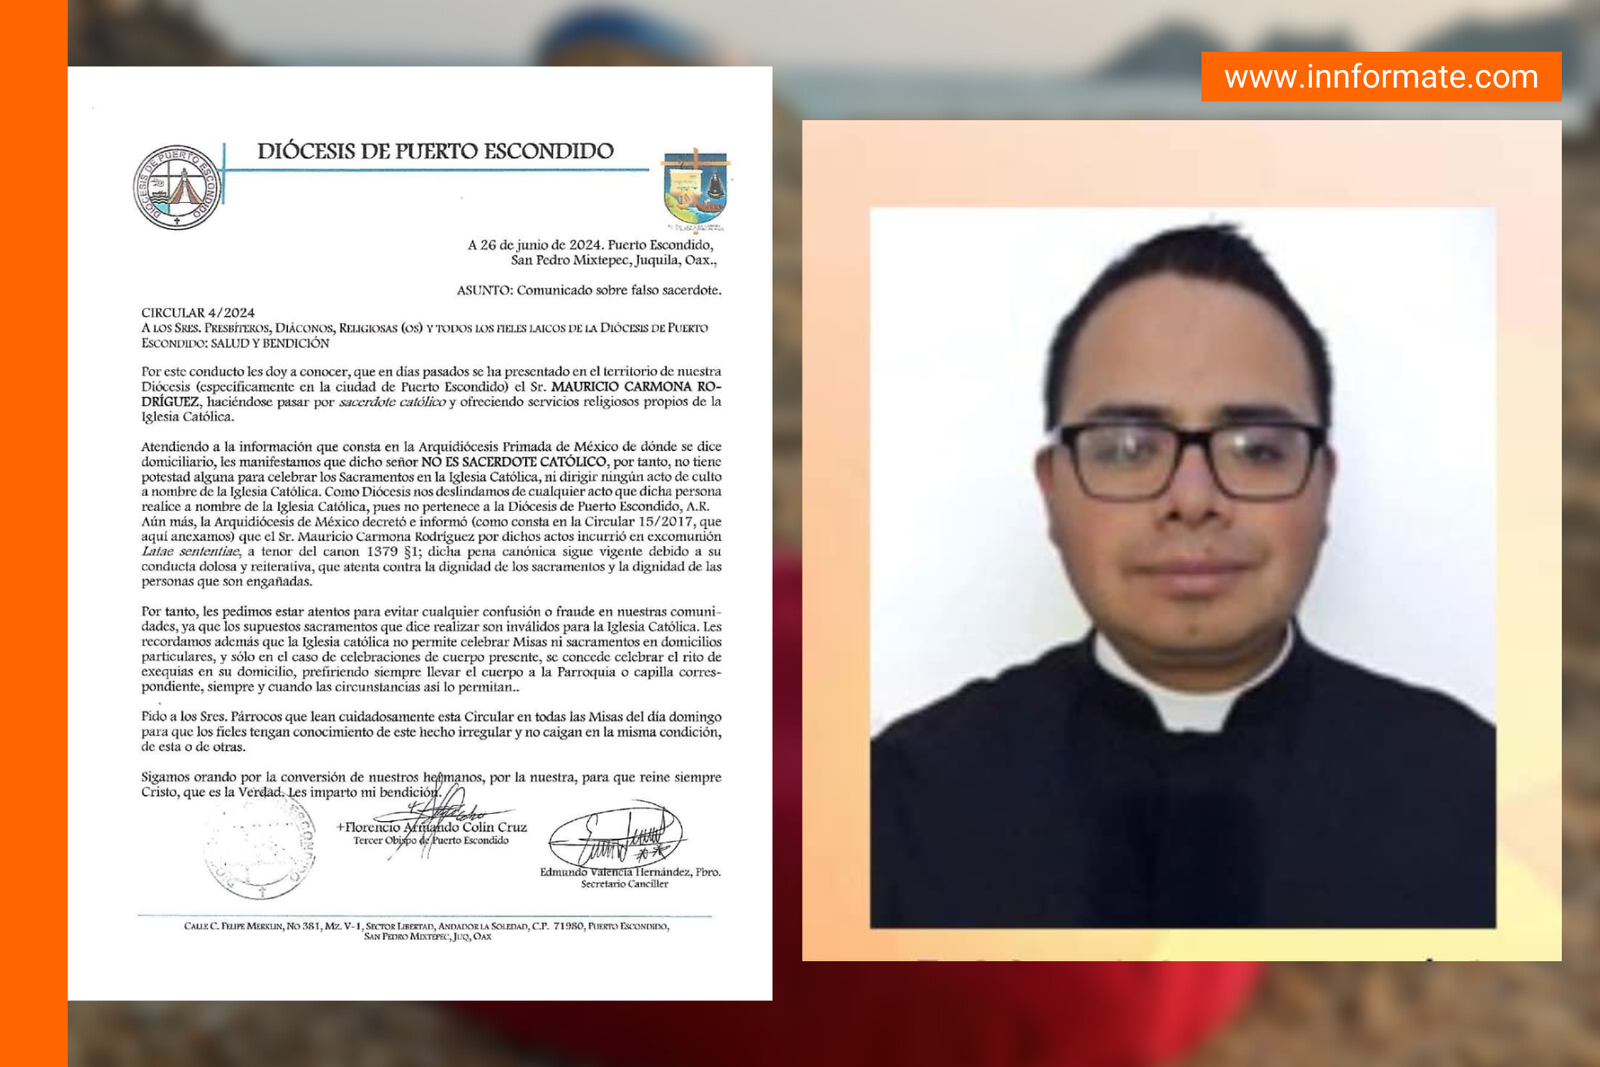 Alerta Diócesis de Puerto Escondido por falso sacerdote en la Costa de Oaxaca